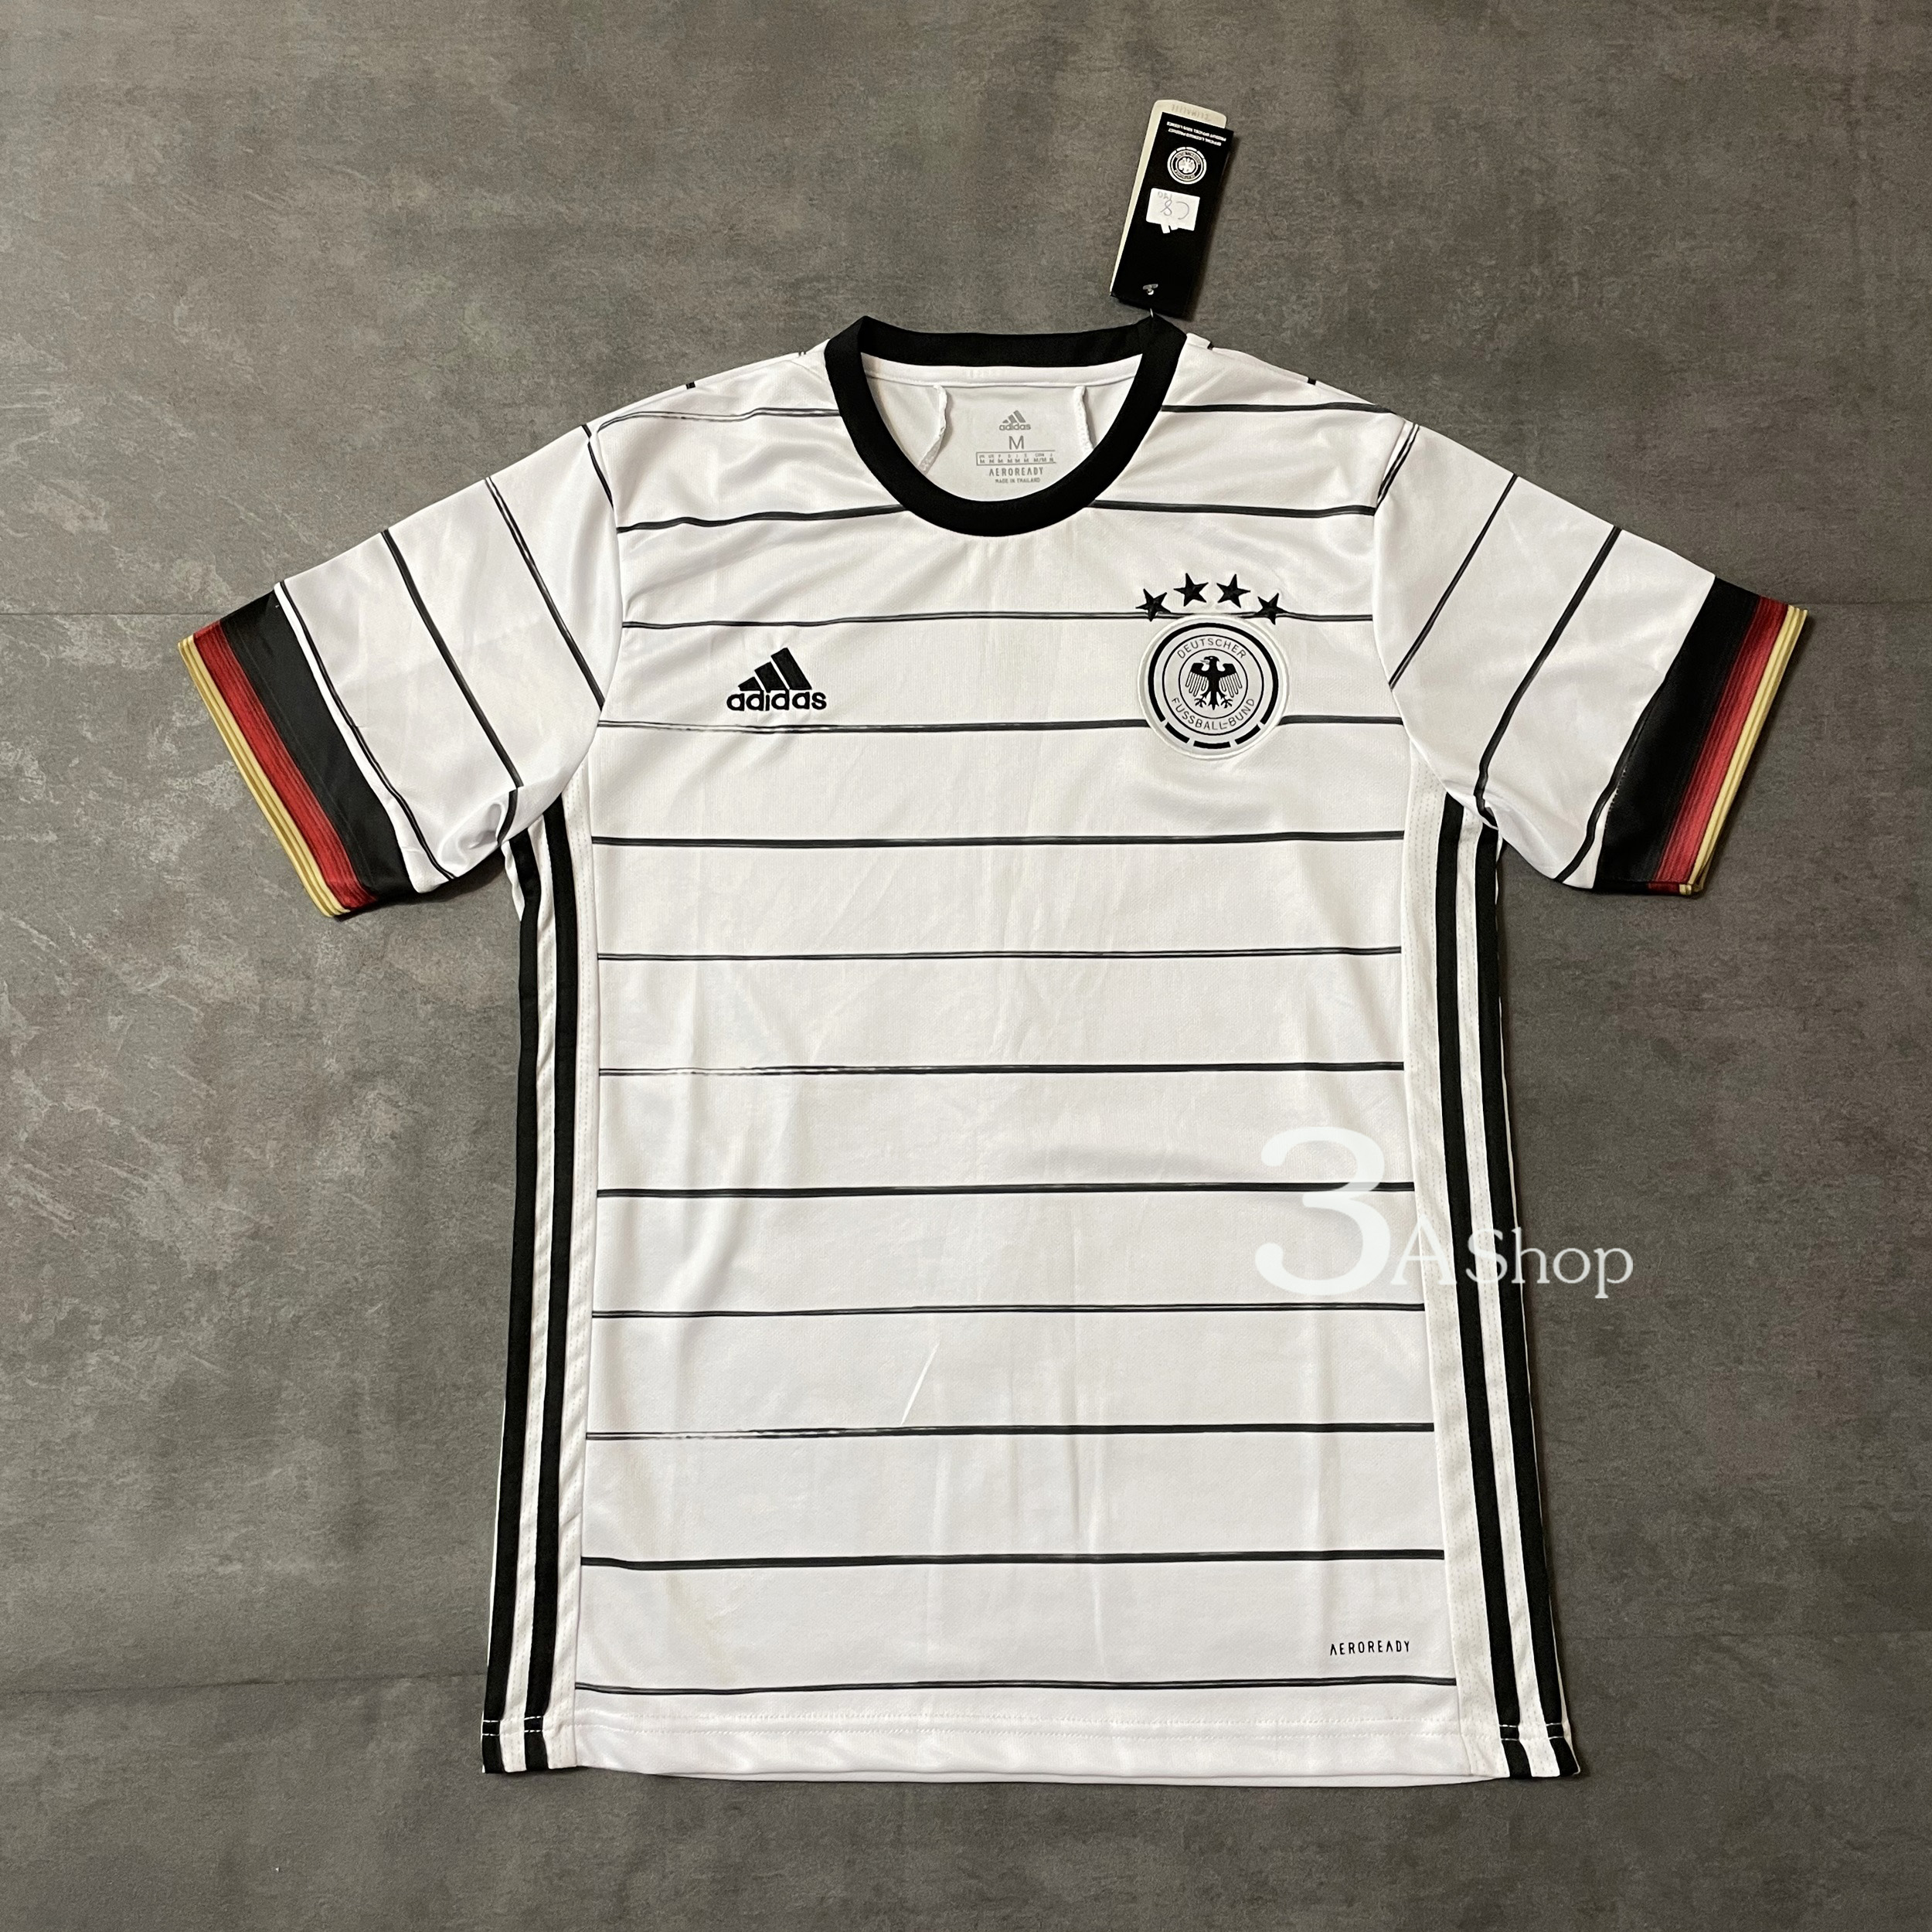 Germany 20 FOOTBALL SHIRT SOCCER  เสื้อบอล เสื้อฟุตบอล เสื้อบอลชาย เสื้อฟุตบอล เสื้อกีฬาชาย2021 เสื้อทีมเยอรมันนี ปี20 เกรด 3A